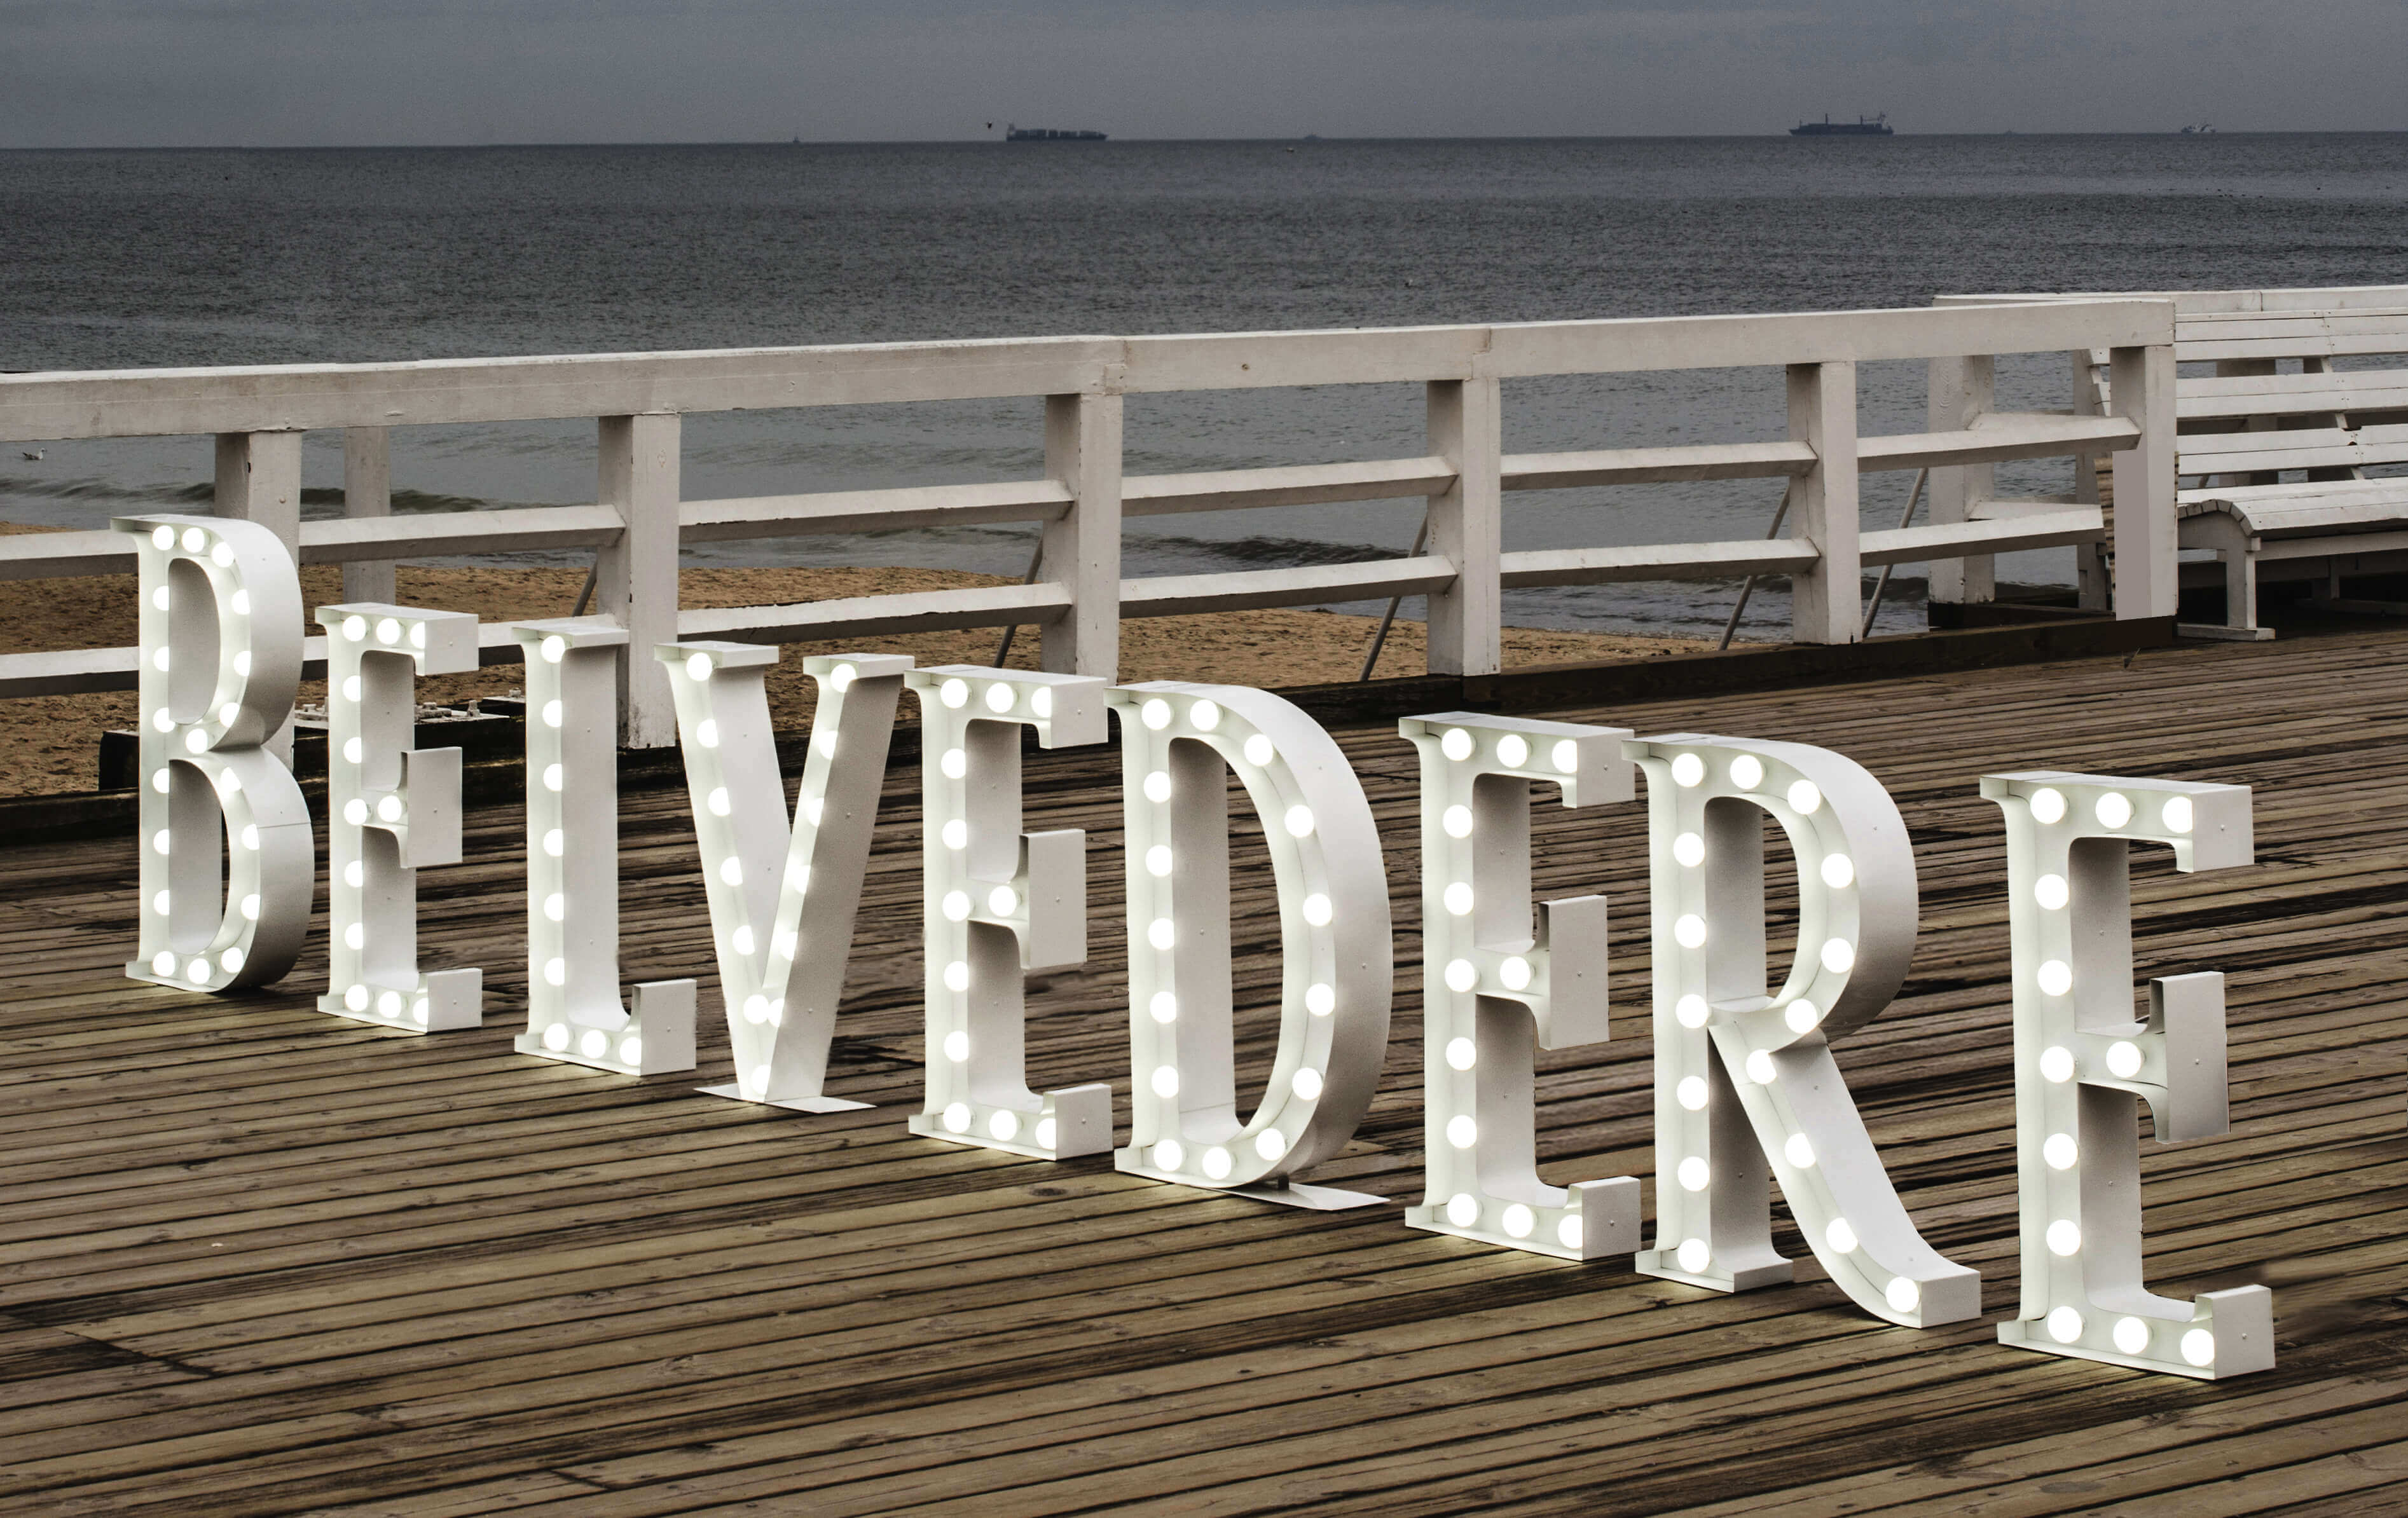 Belvedere - Belvedere - lettere in piedi con lampadine sul molo